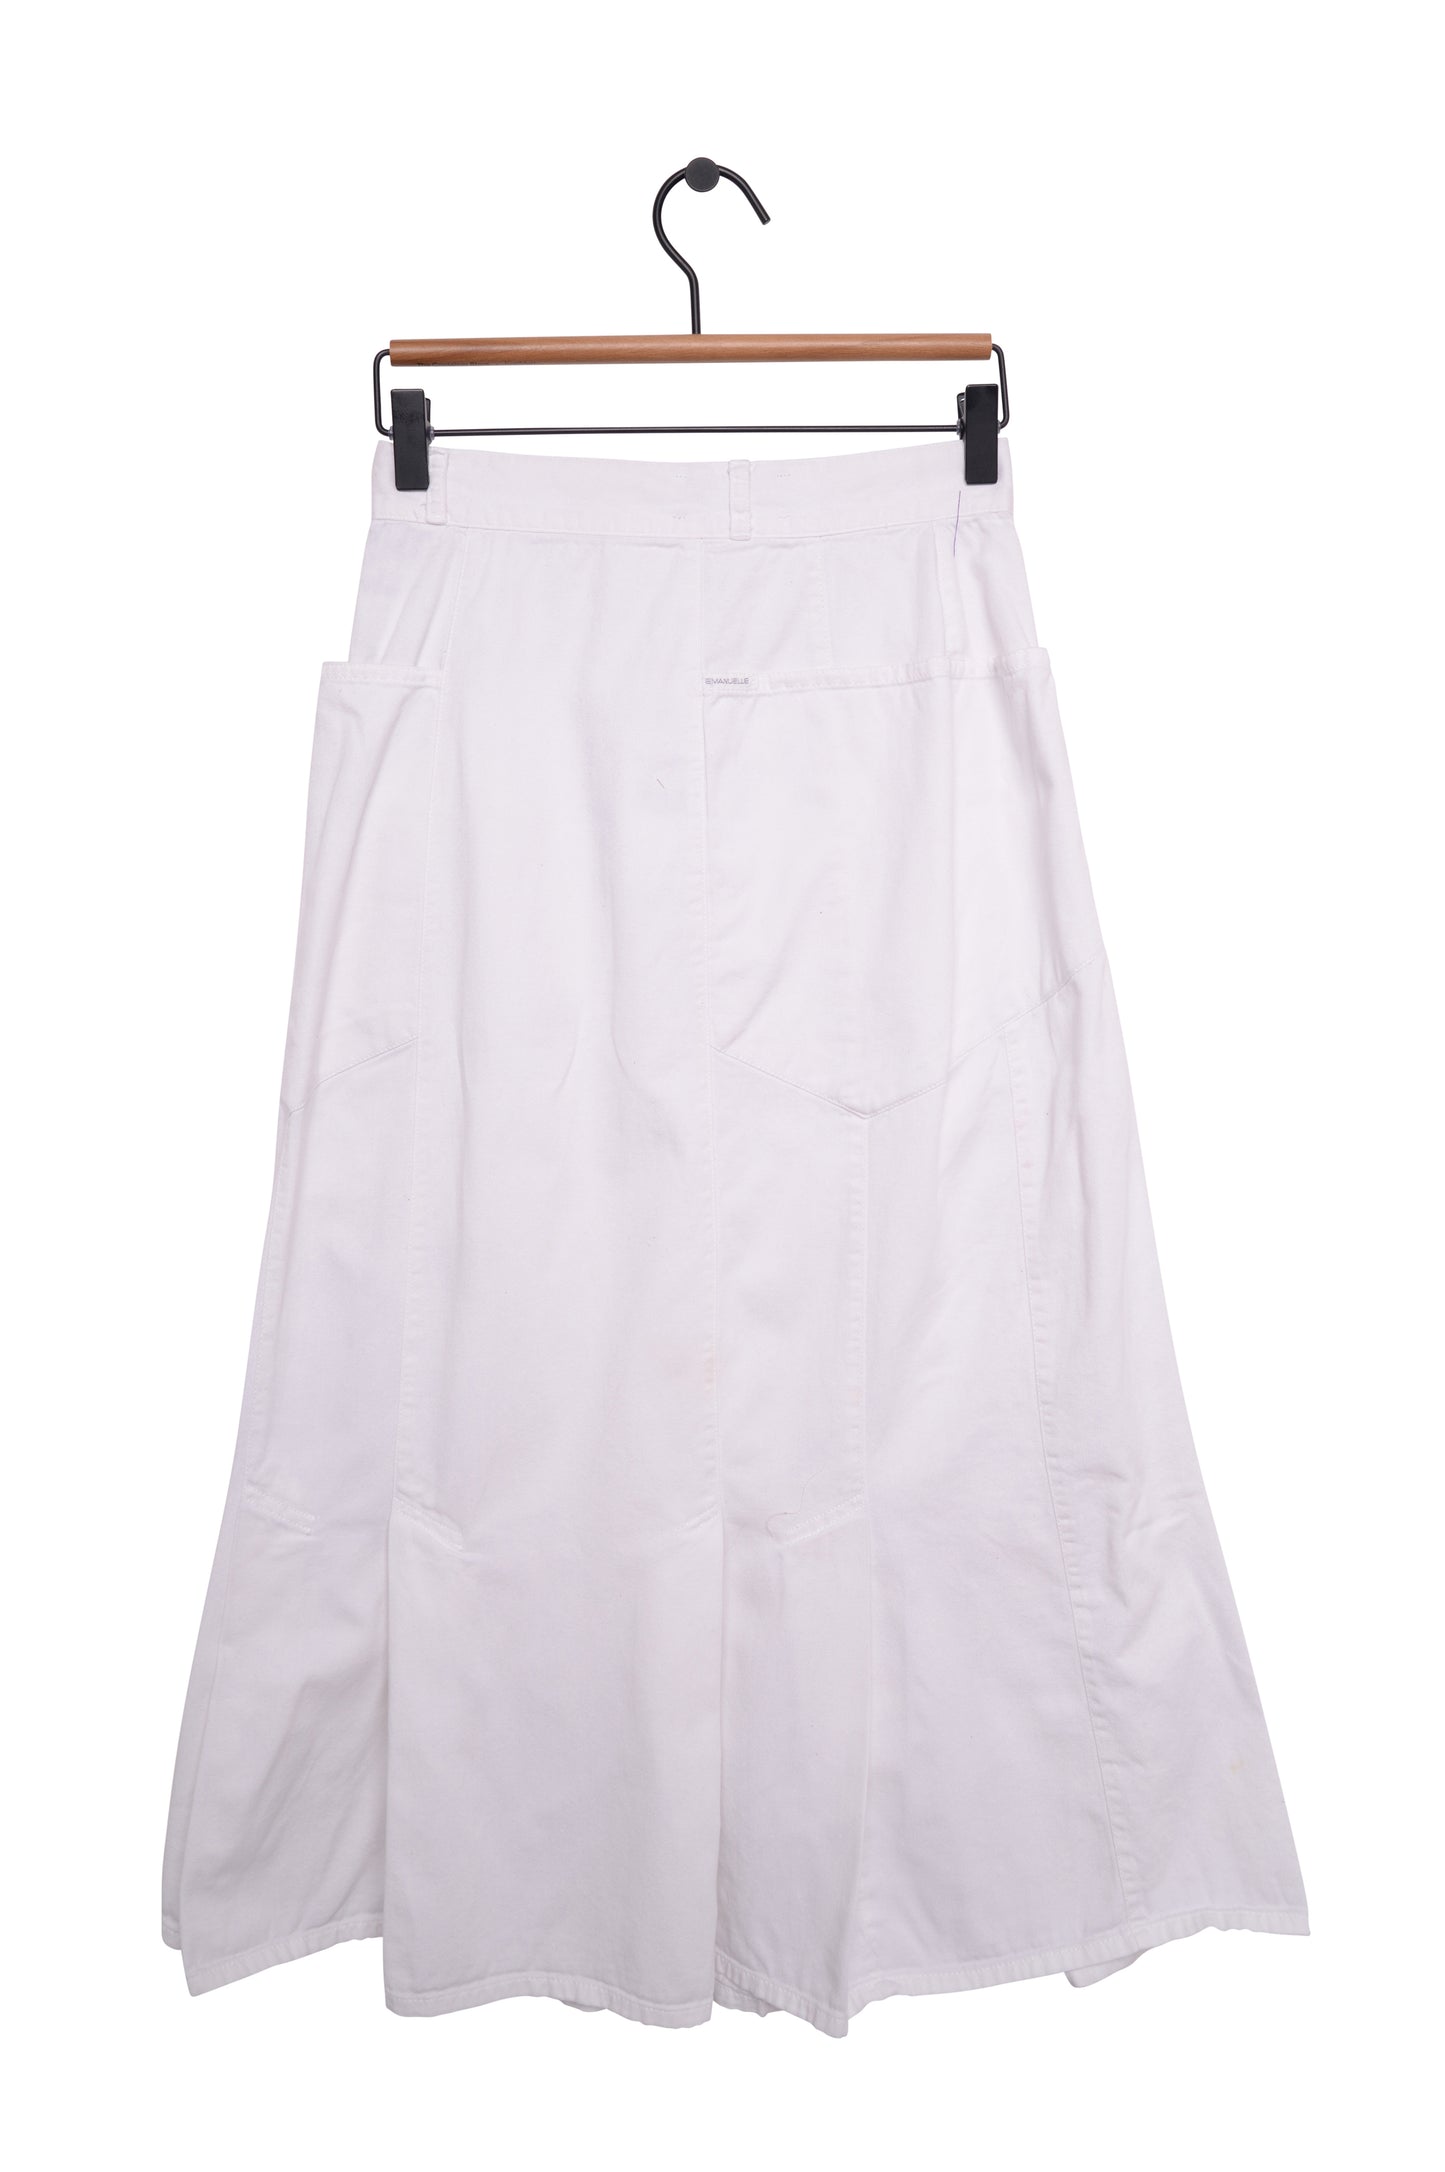 1980s White Denim Maxi Skirt